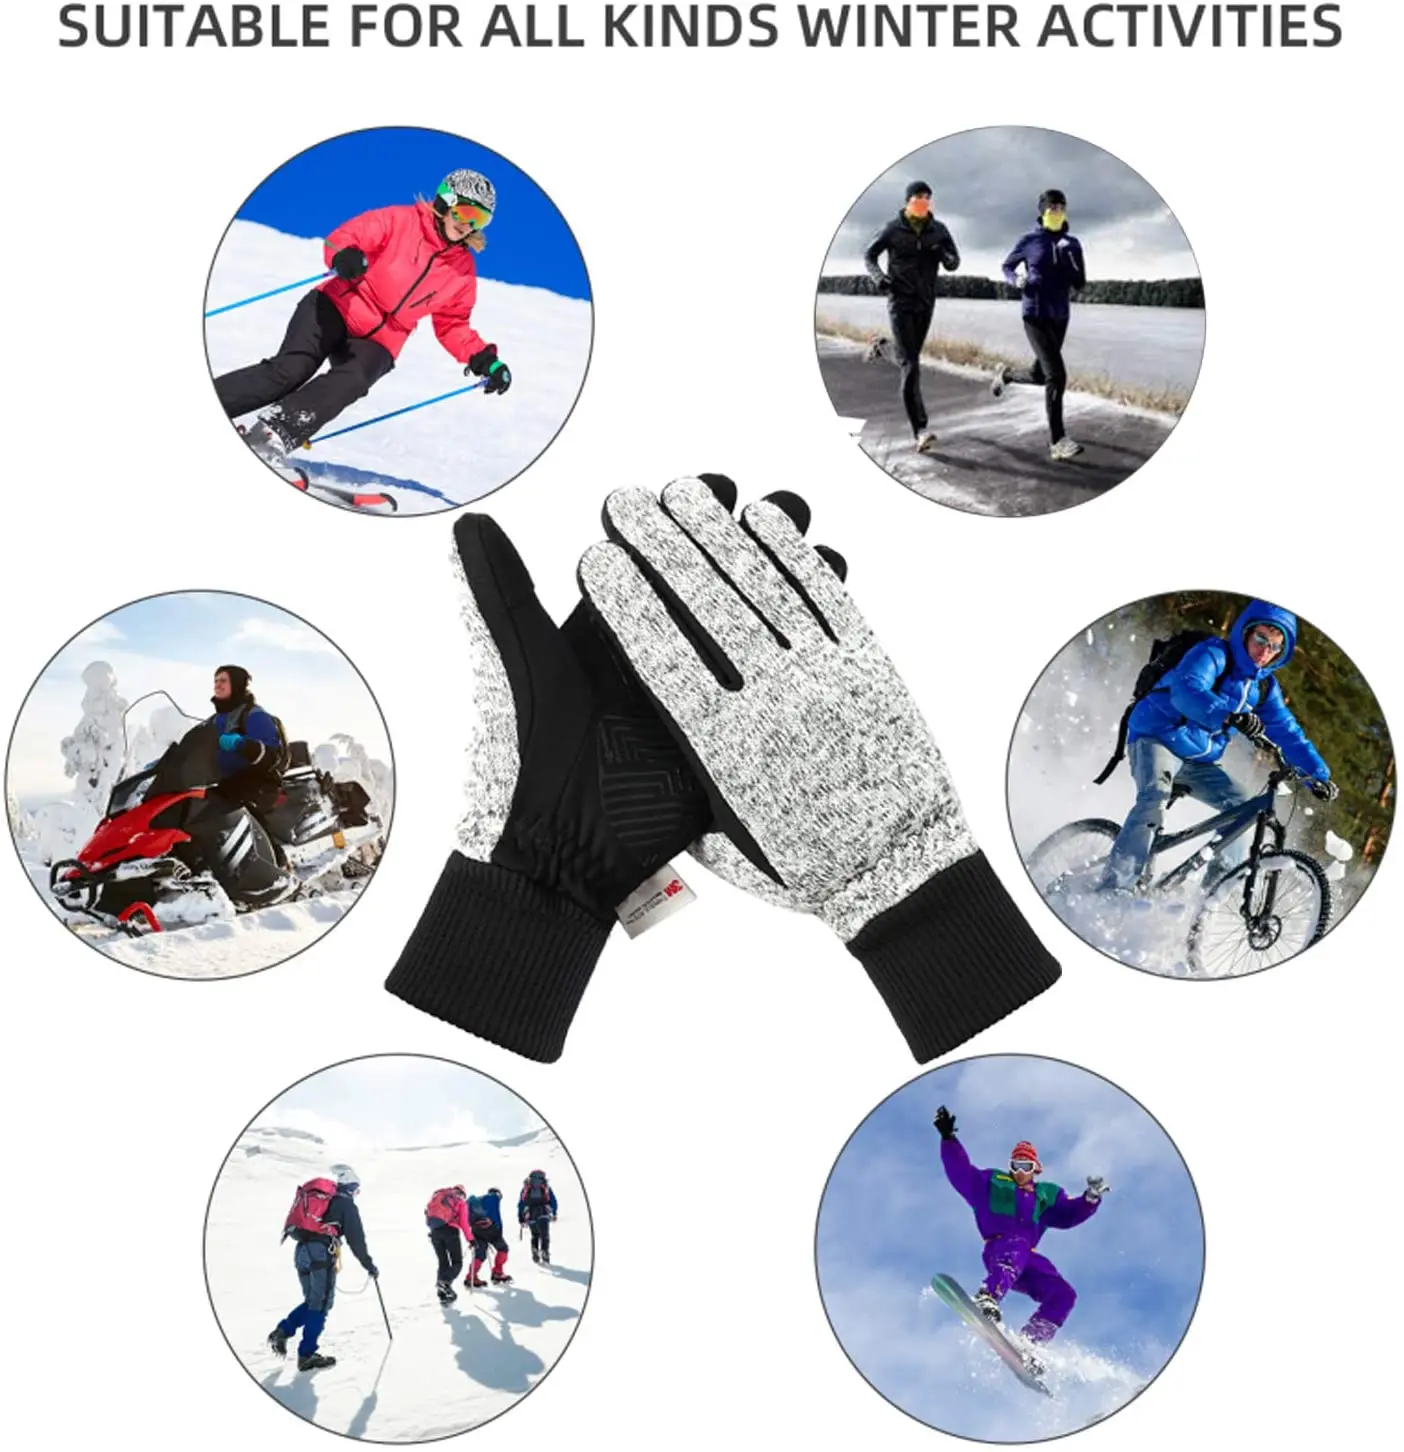 Зимние перчатки-10 ℃ 3M Thinsulate, теплые перчатки для бега, теплые перчатки для работы с сенсорным экраном, дорожные велосипедные перчатки для мужчин и женщин